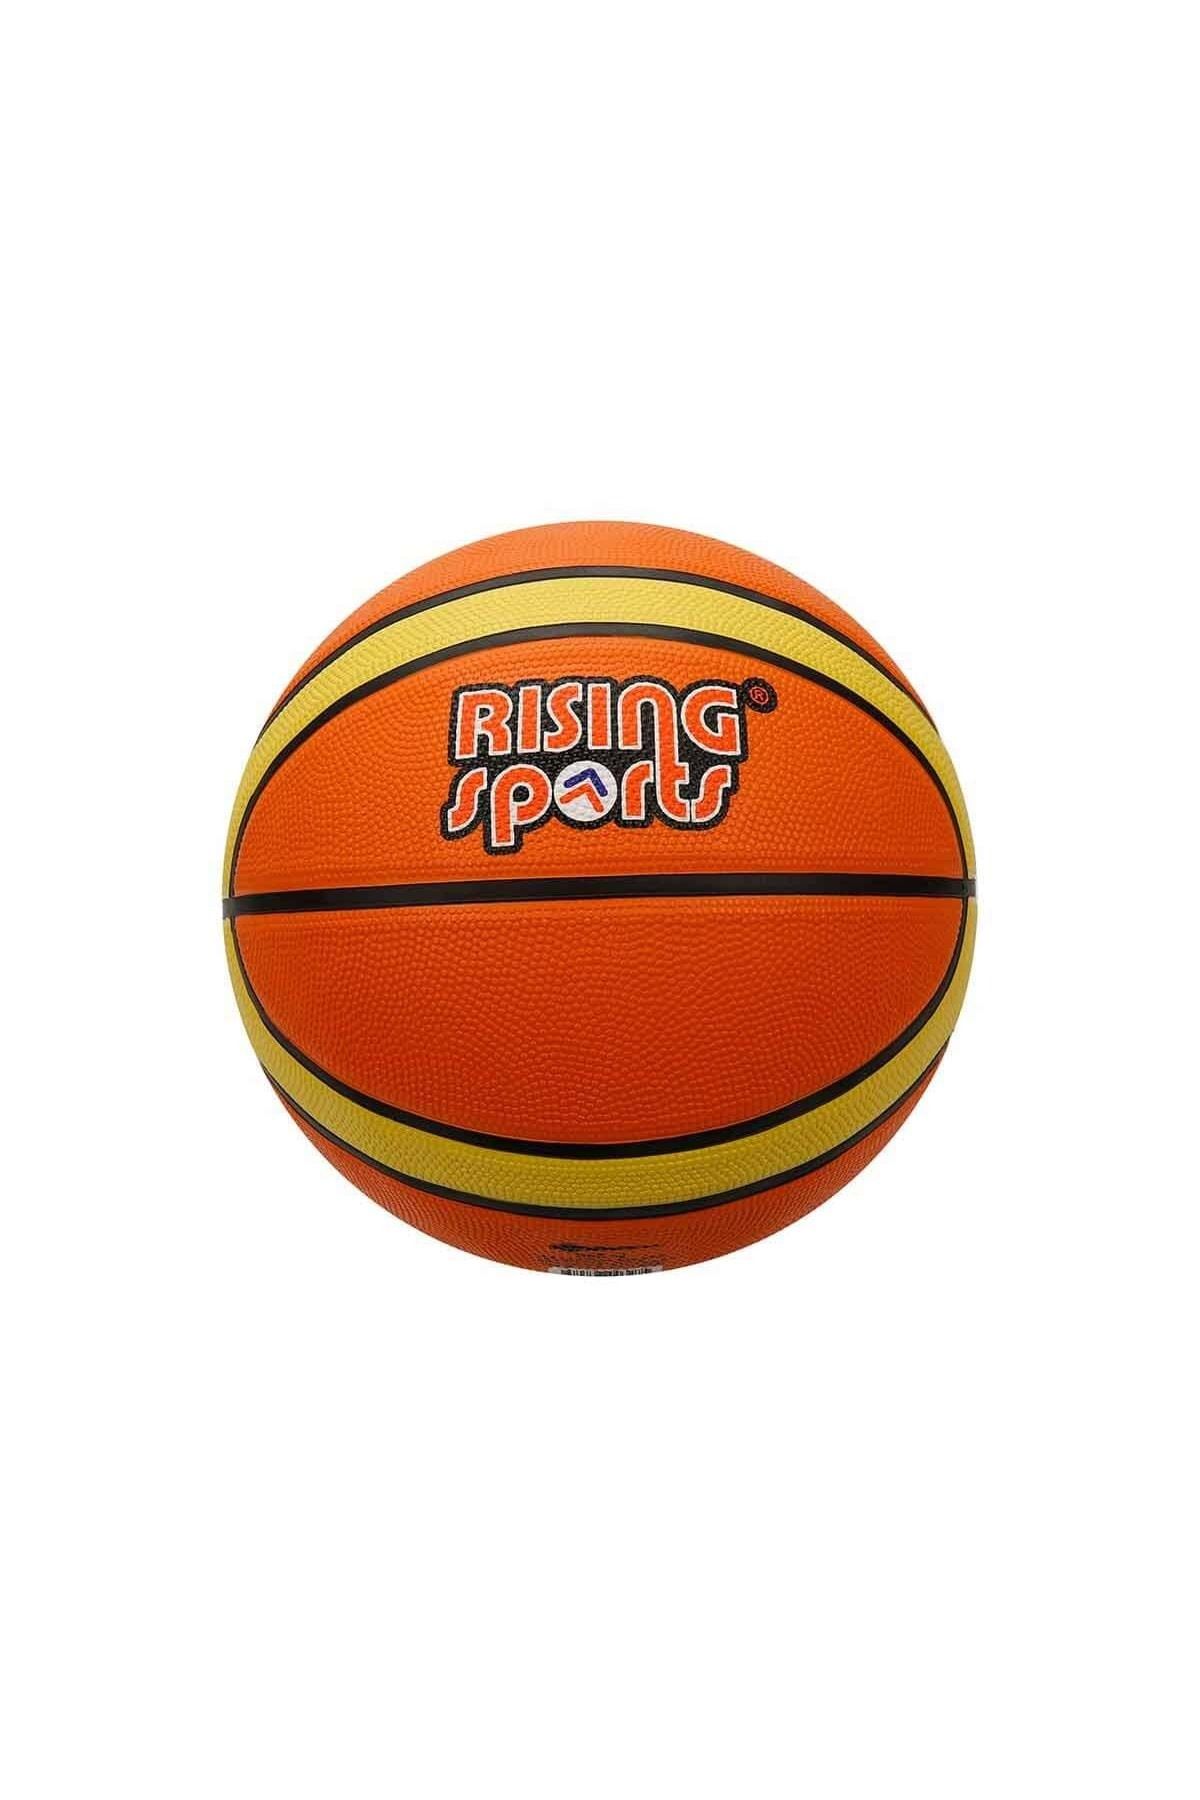 Bubu Basketbol Topu Rising Sports No:7 Turuncu/Sarı